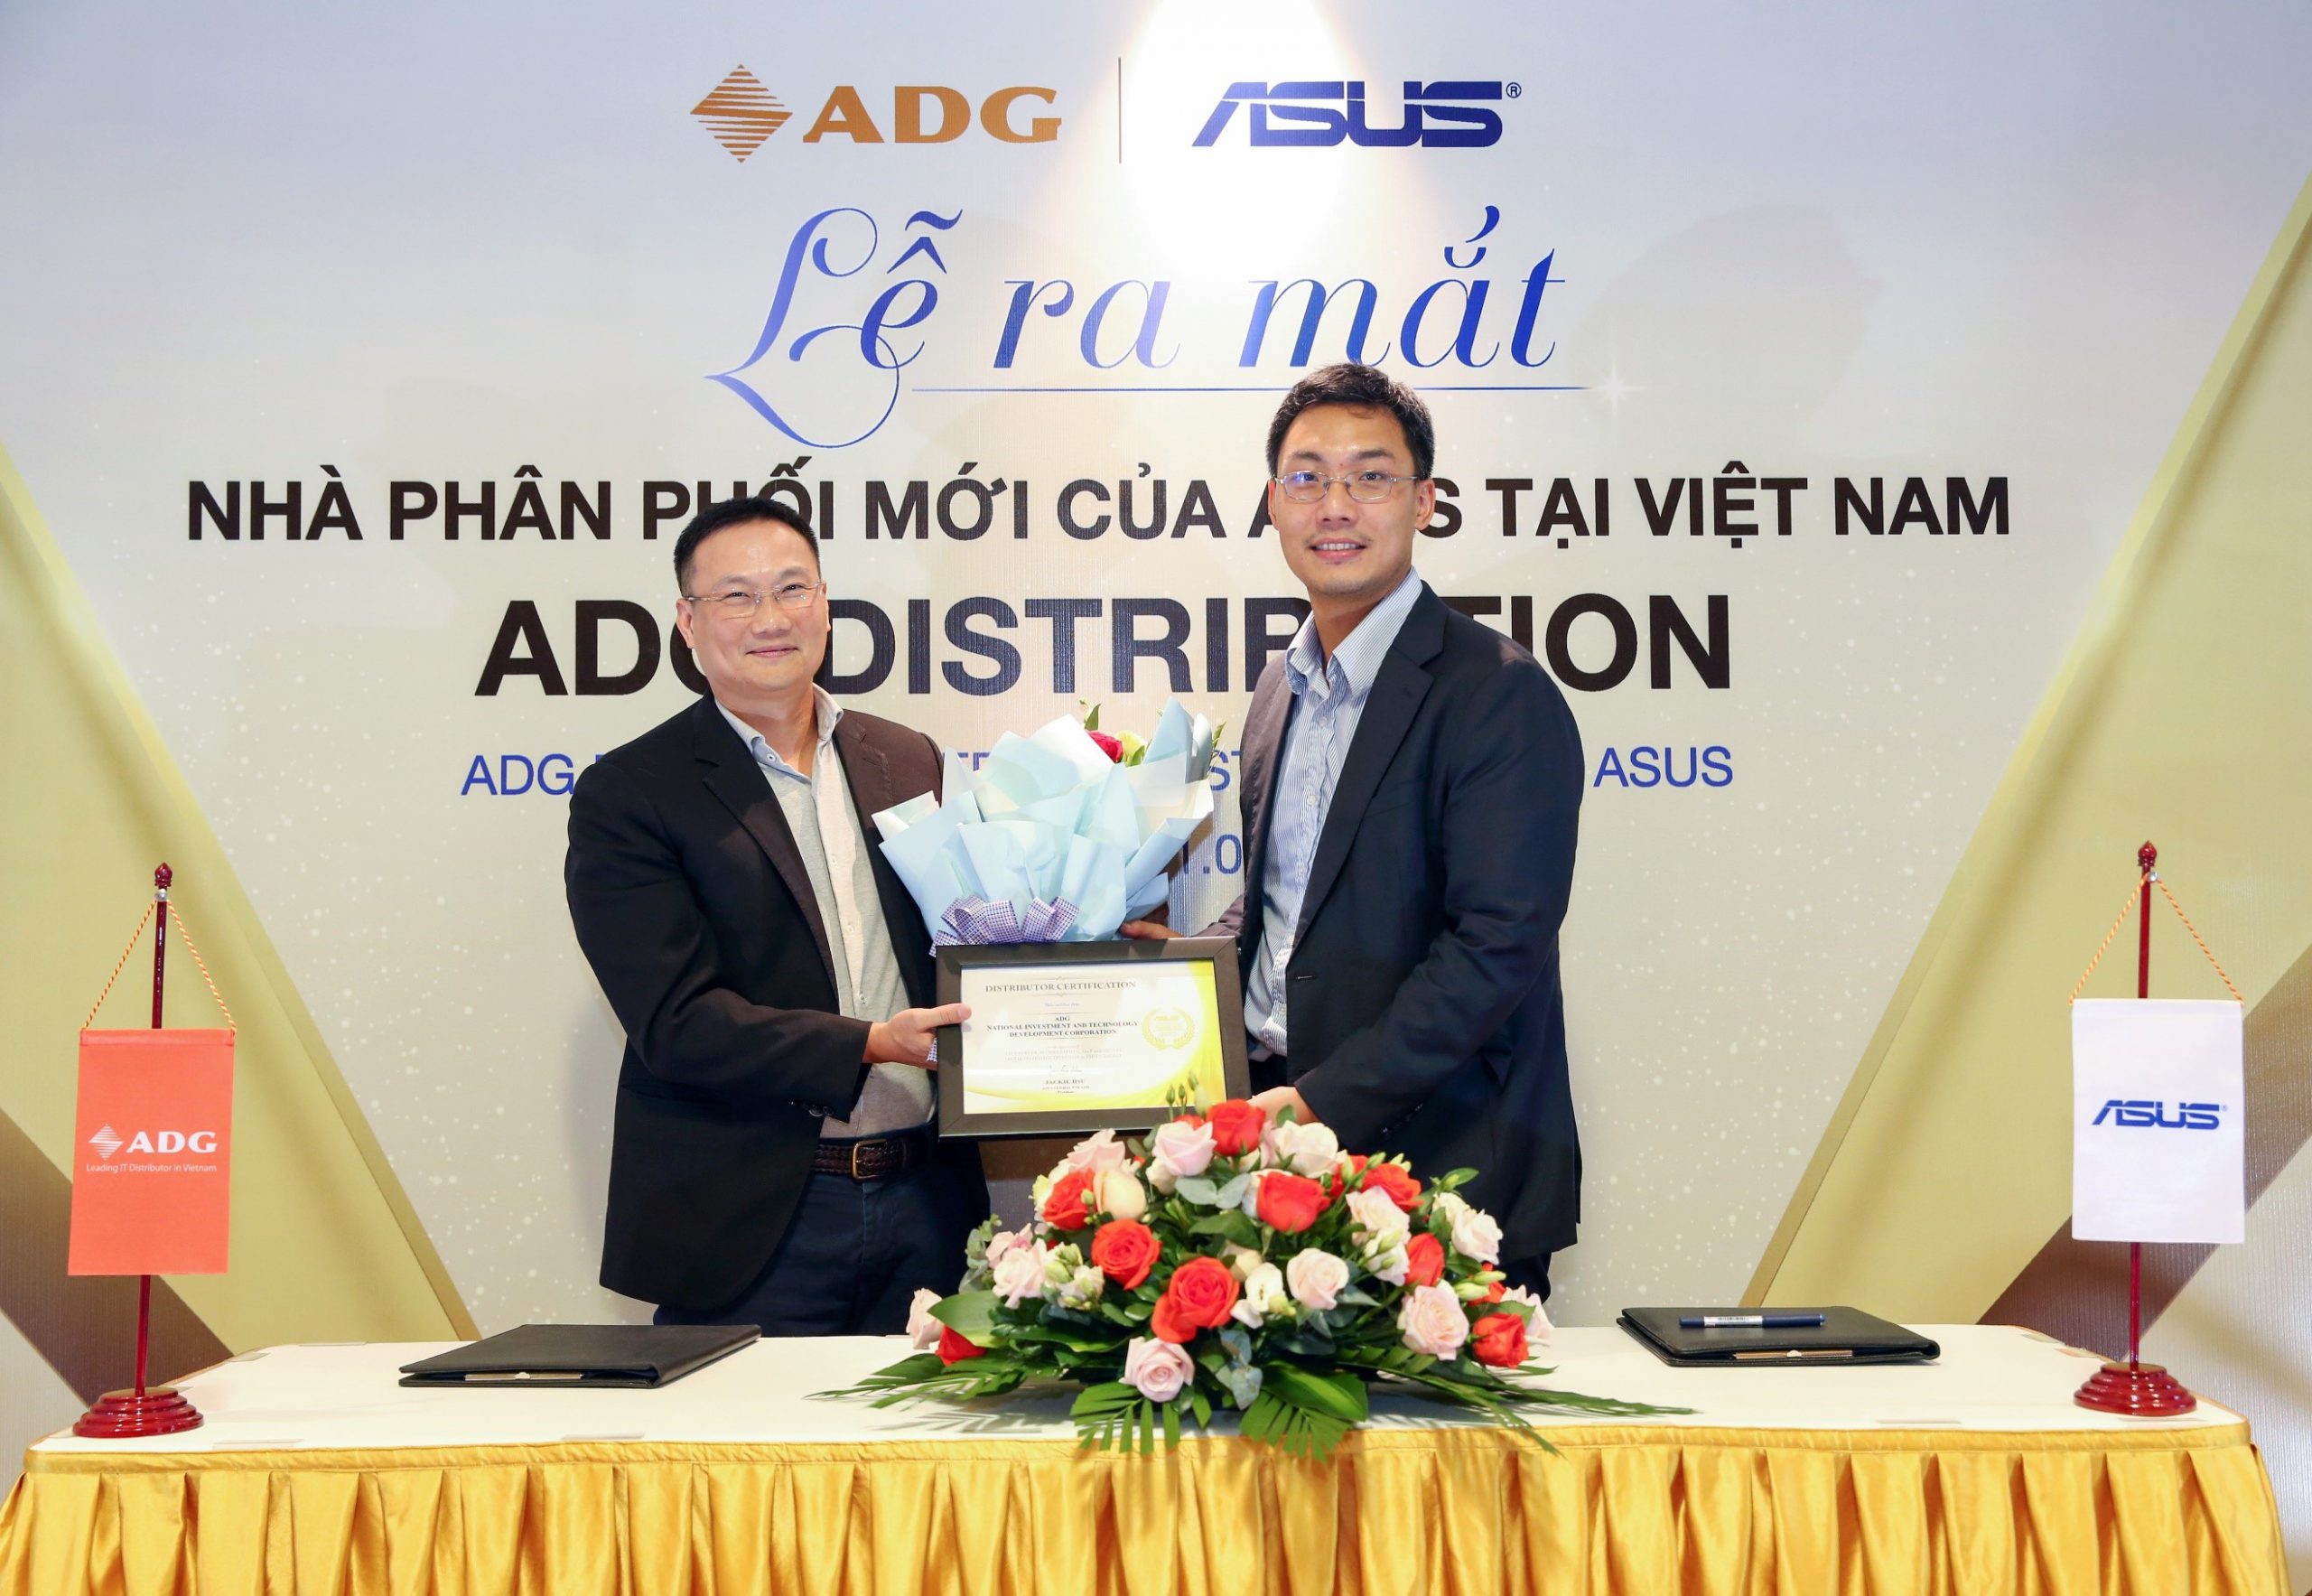 ADG Distribution ký kết trở thành Nhà phân phối Asus tại Việt Nam 2